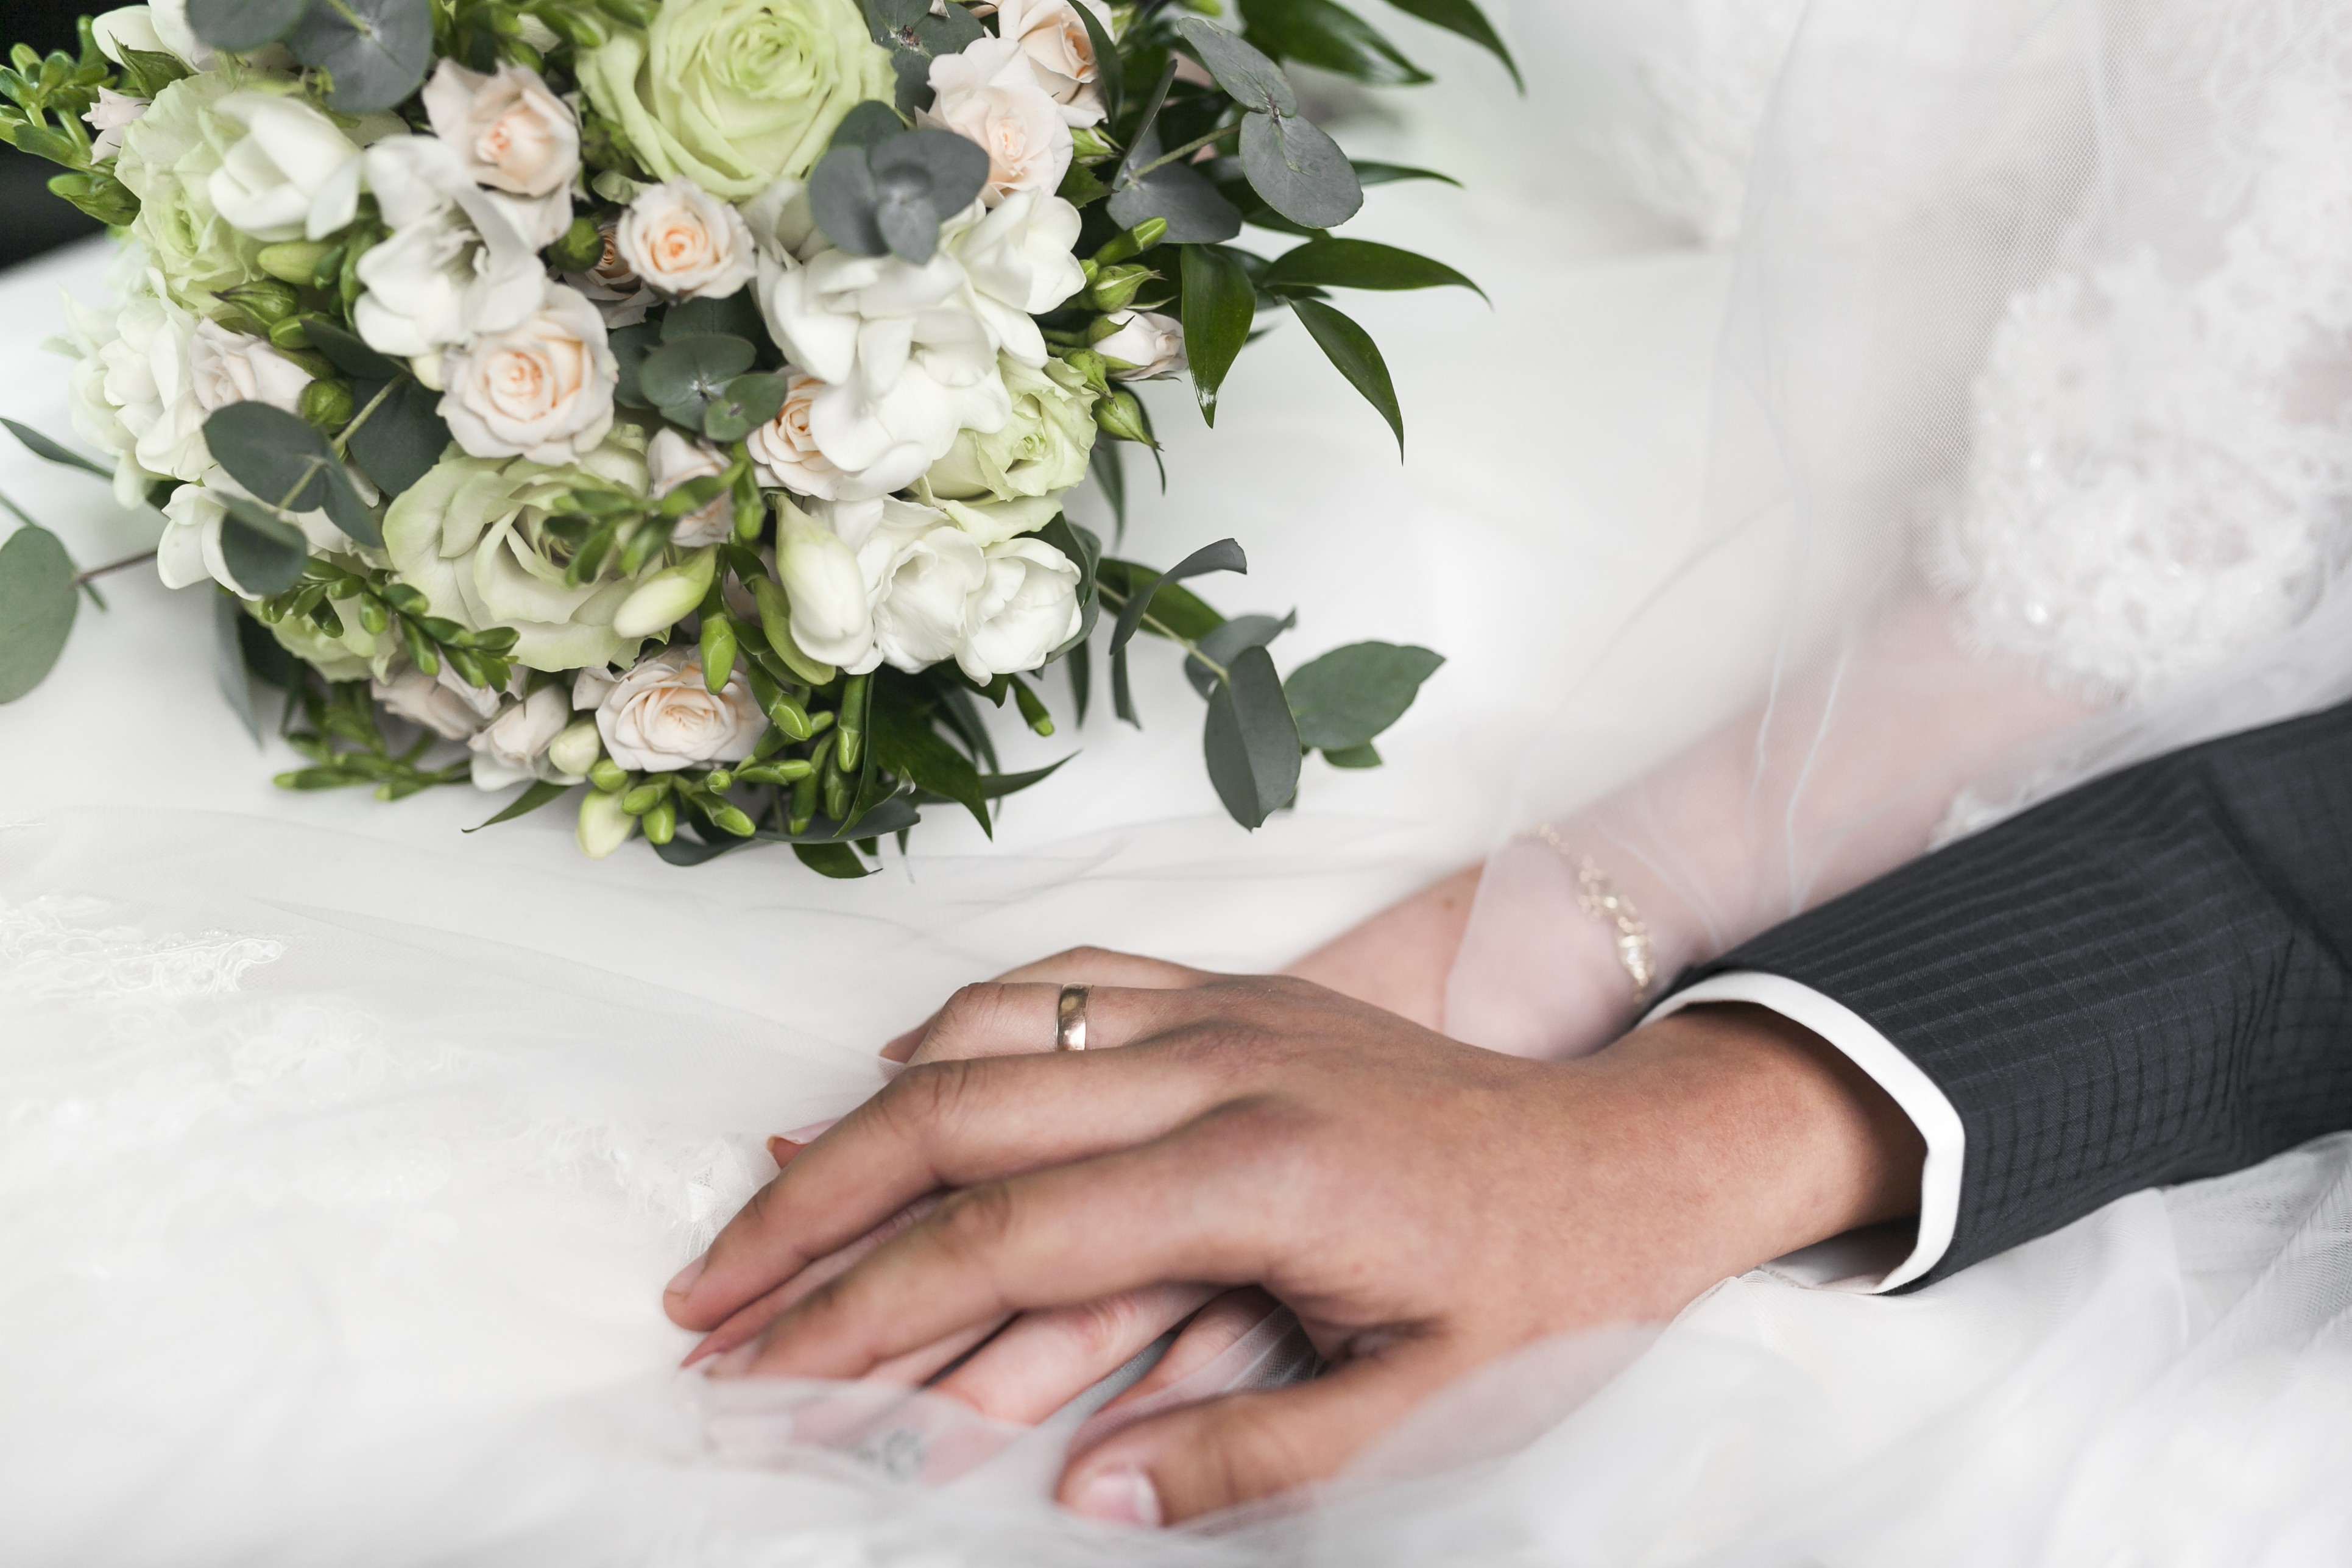 
Trước khi kết hôn cần xem xét kĩ về tuổi của đối tượng kết hôn
